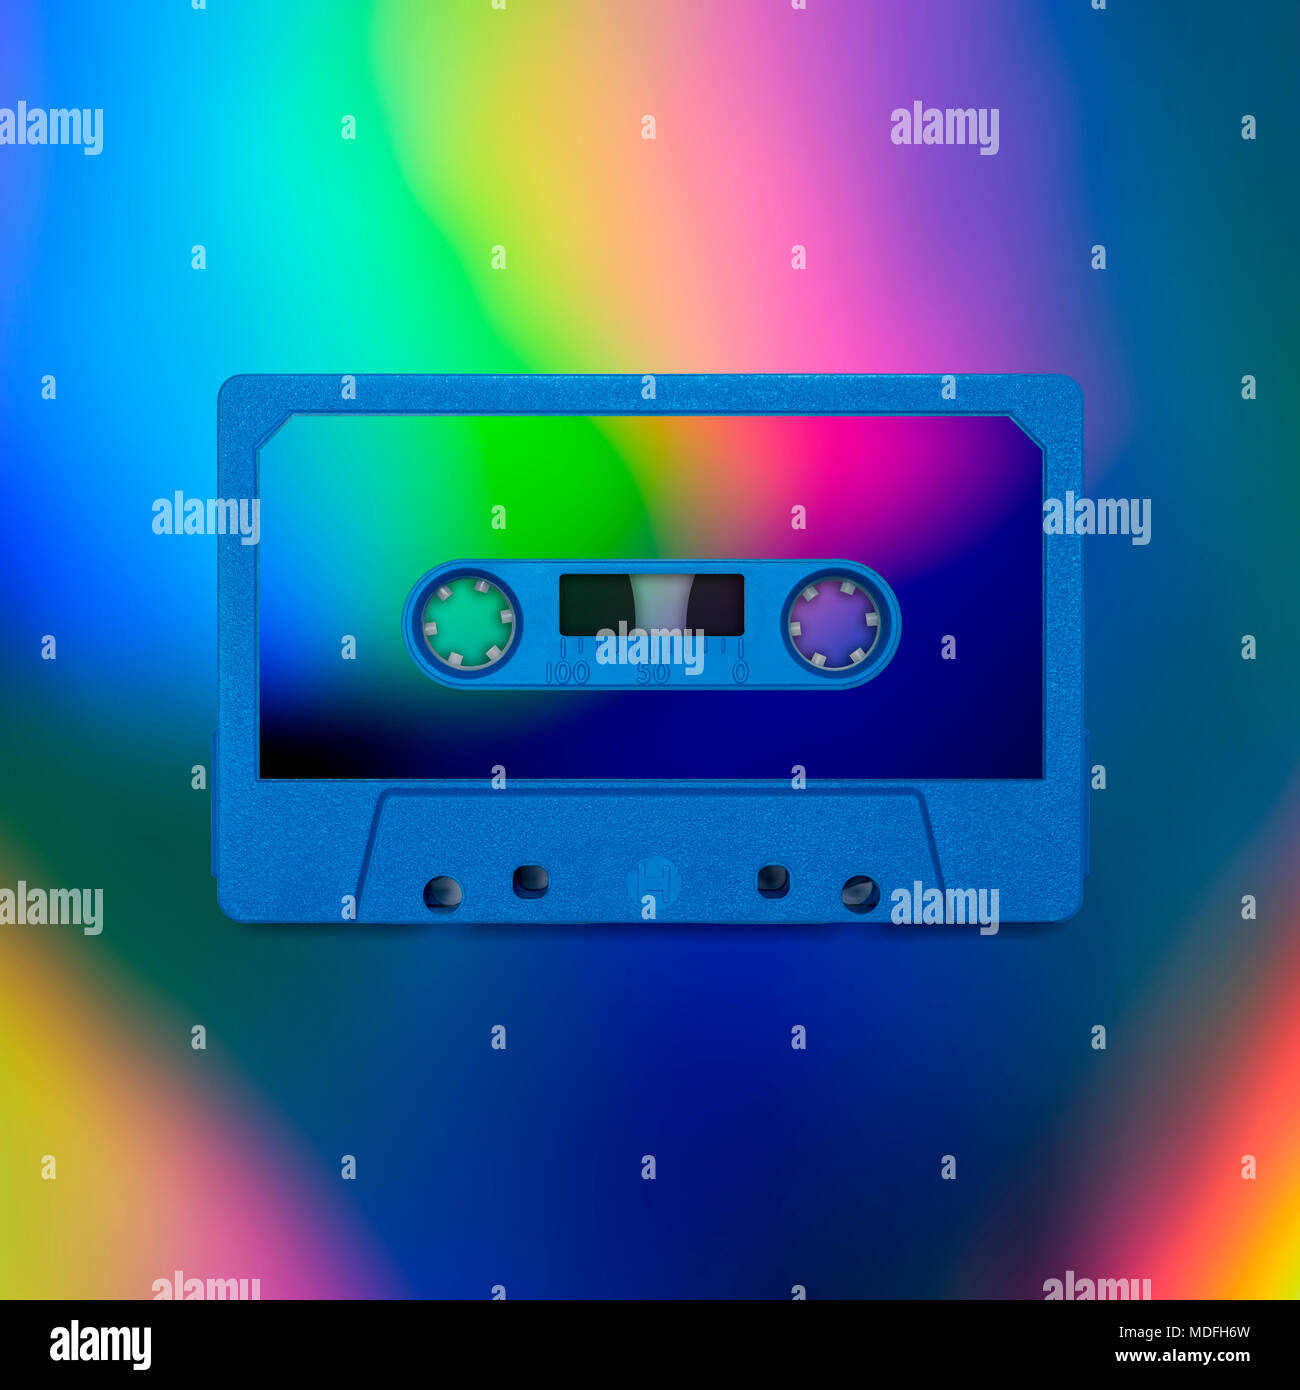 Nostalgie de cassettes, isolé et présenté dans d'intenses couleurs holographique irisée, pour couvrir la conception créative, affiche, livre, impression, carte cadeau Banque D'Images